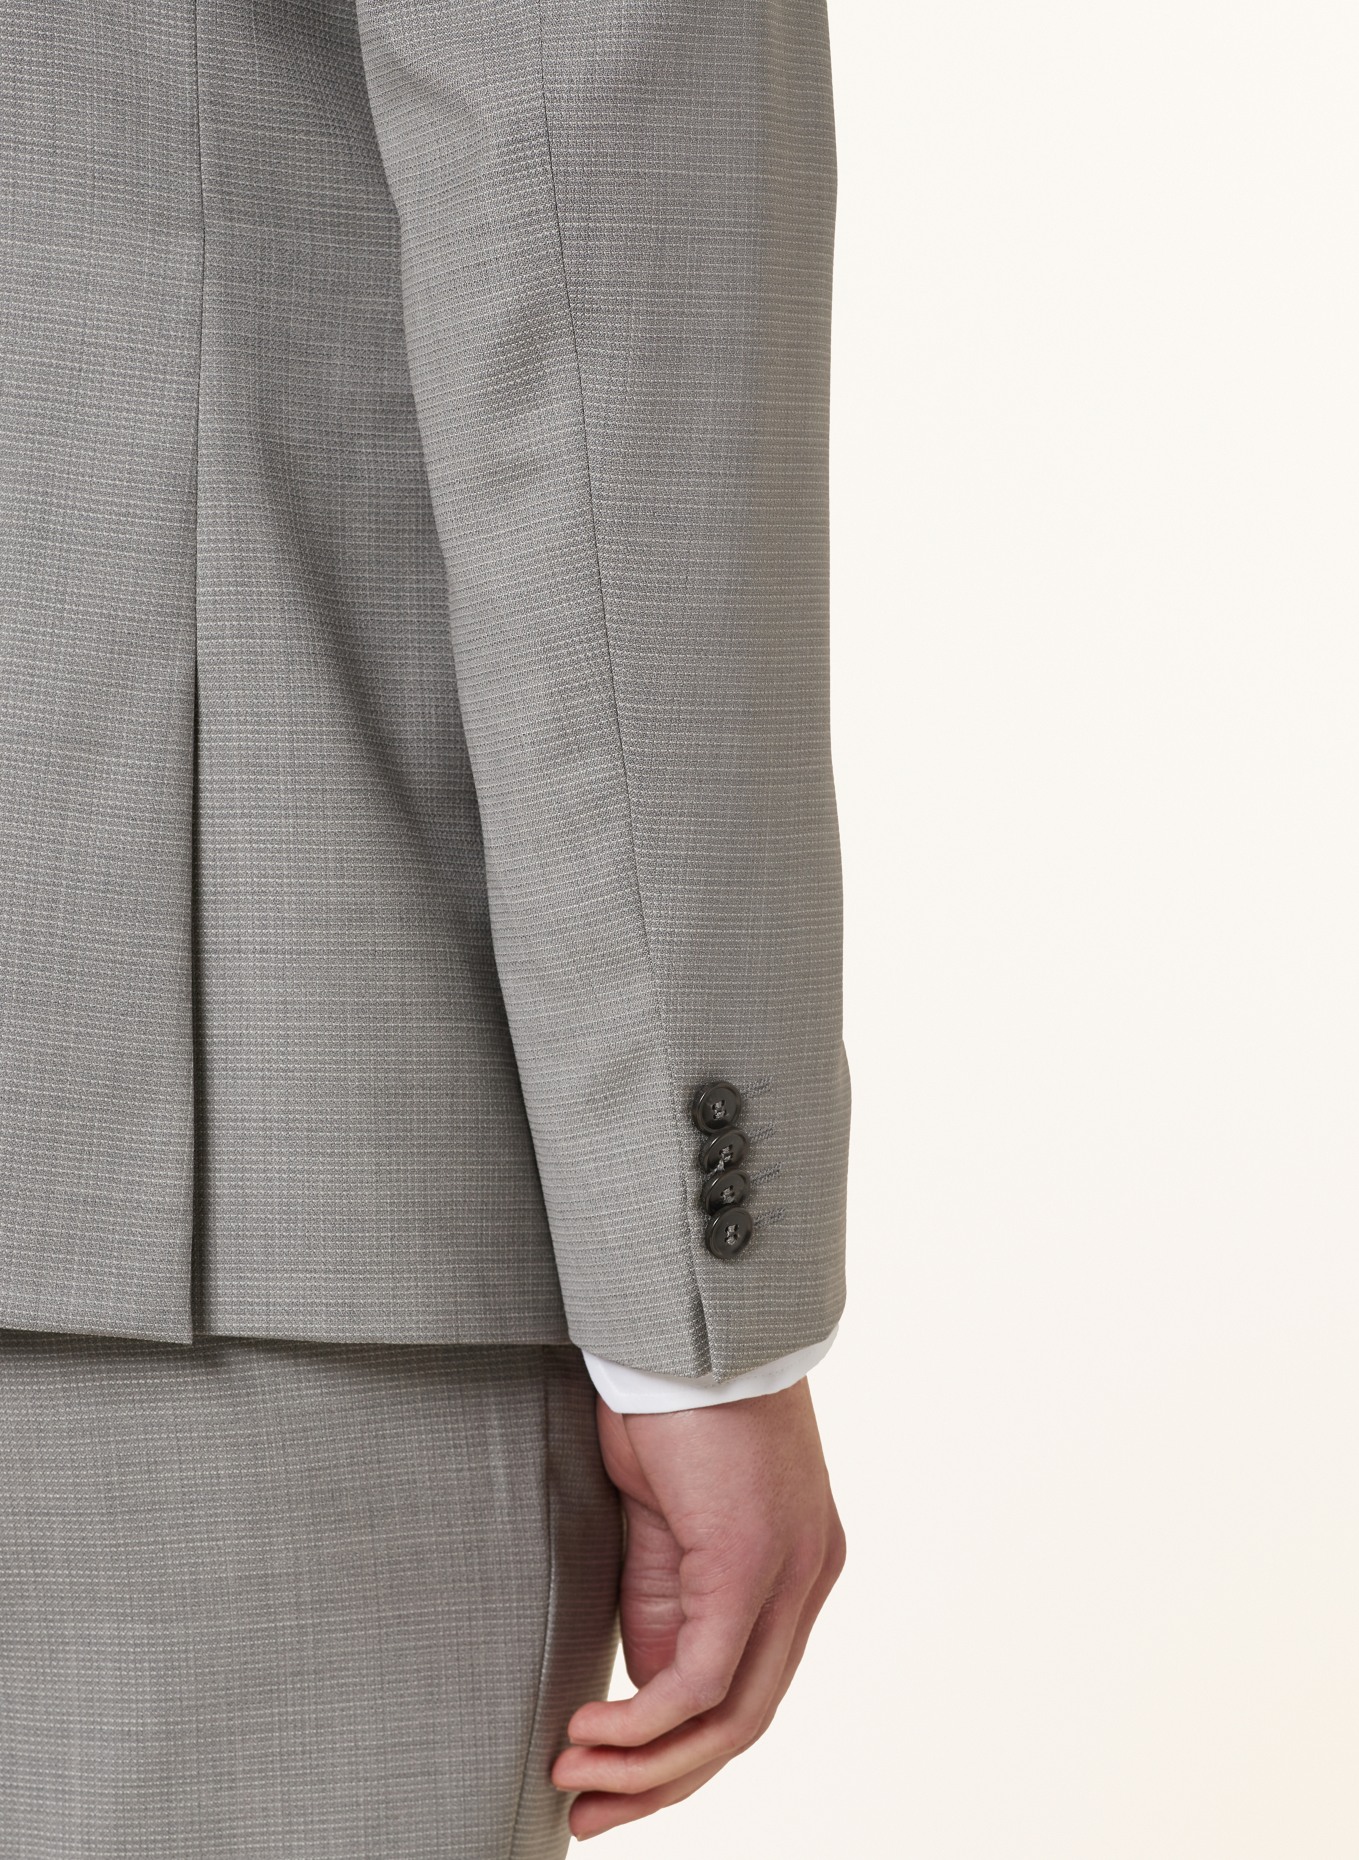 TIGER OF SWEDEN Suit jacket JUSTIN slim fit, Color: M04 Light Grey Melange (Image 6)